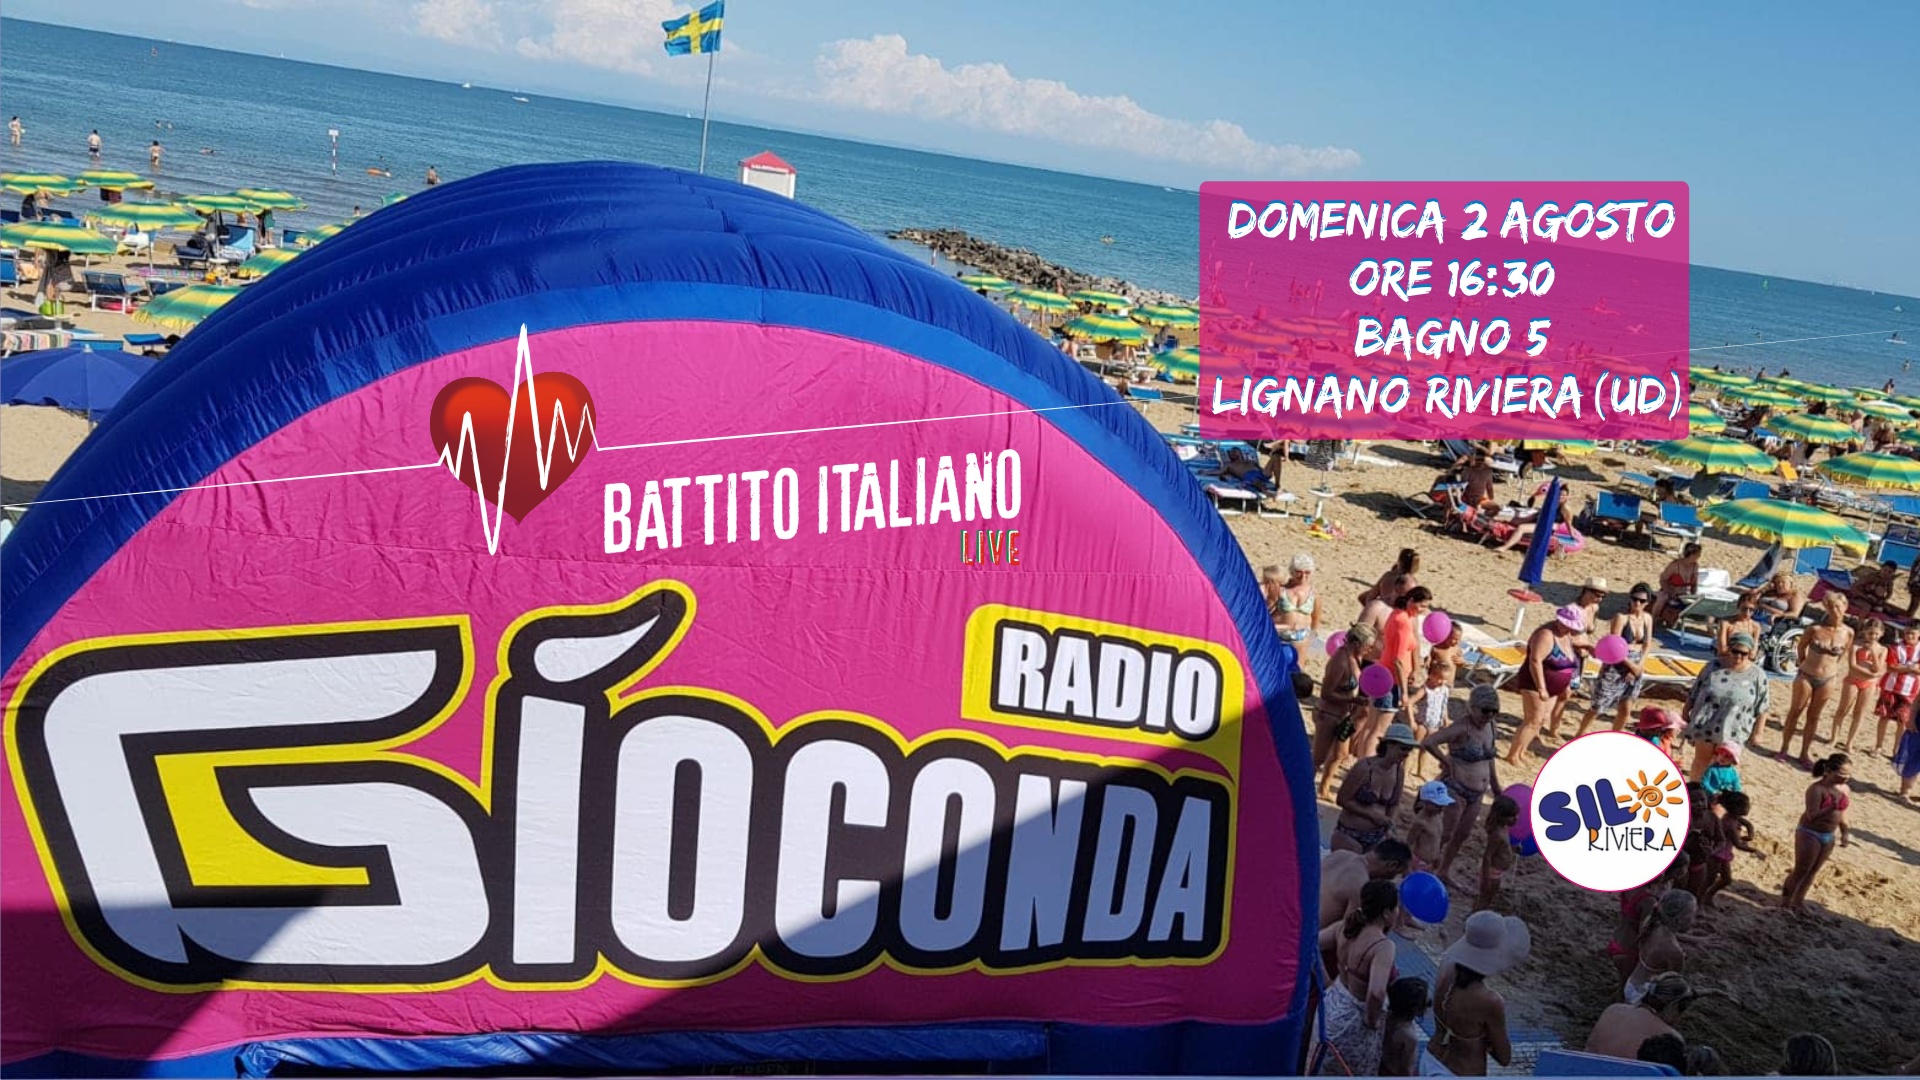 Battito Italiano Live dal Bagno 5 di Lignano Riviera (UD)